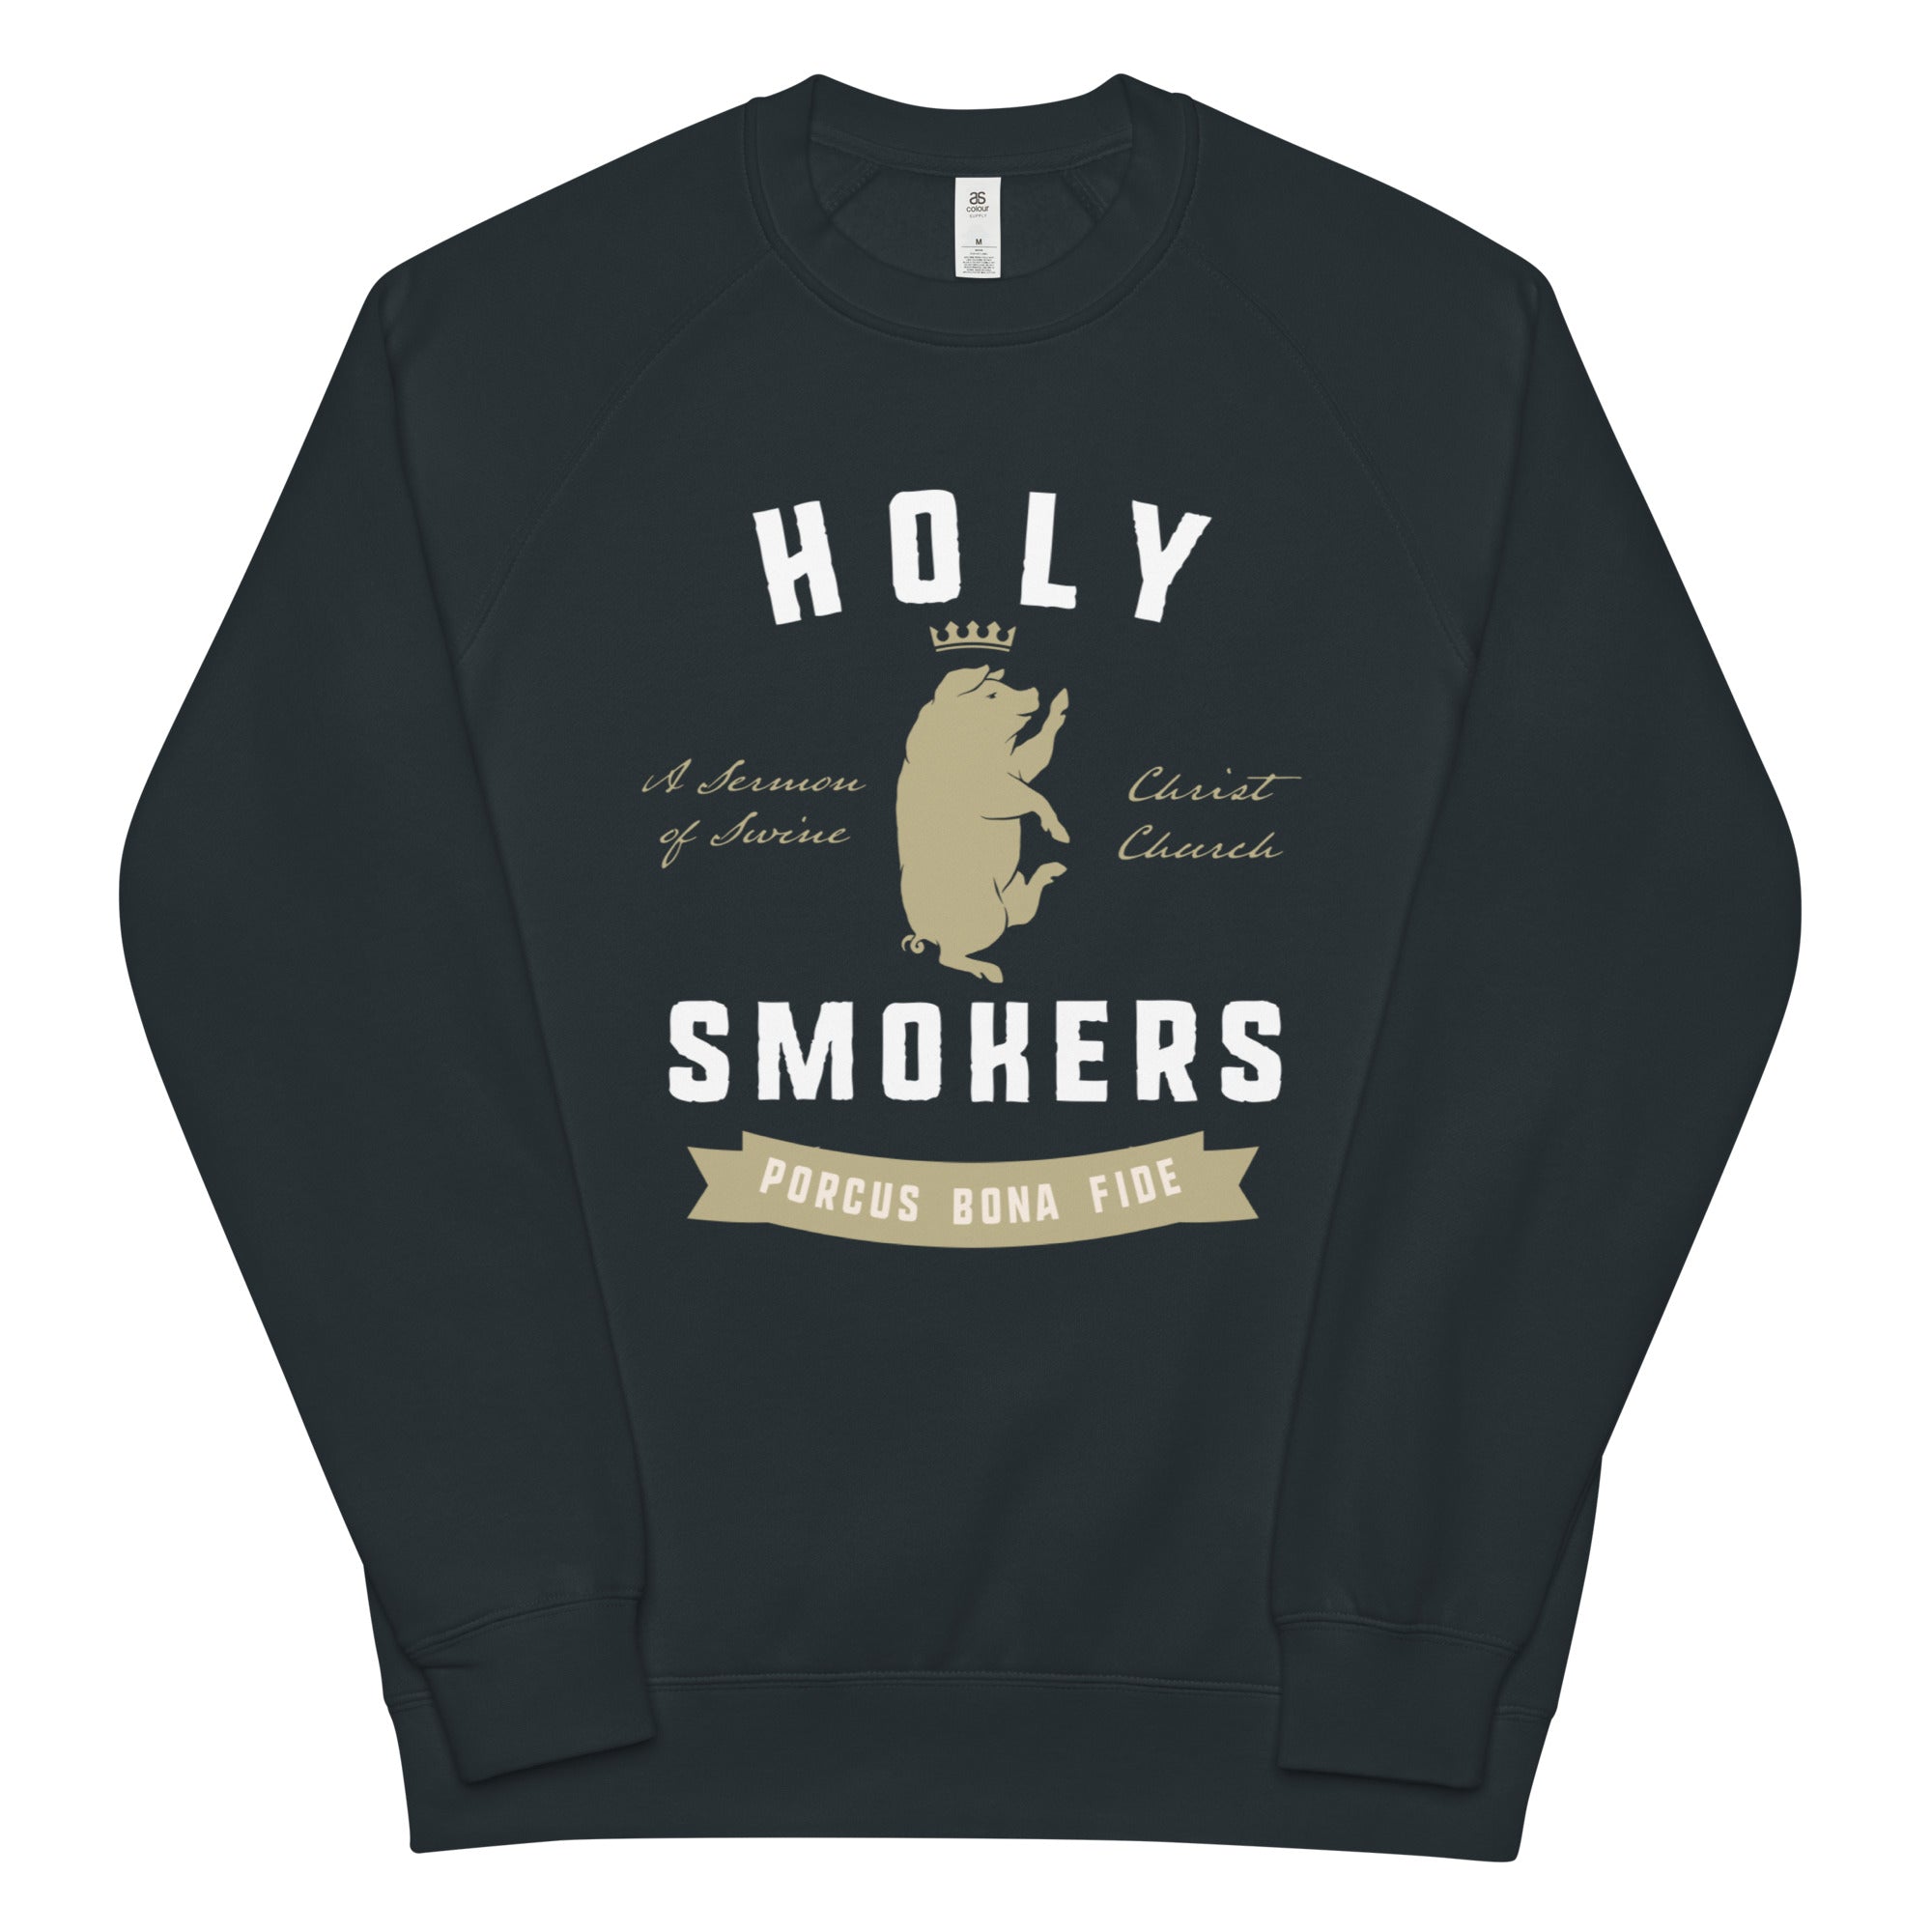 Holy Smokers Unisex raglan sweatshirt